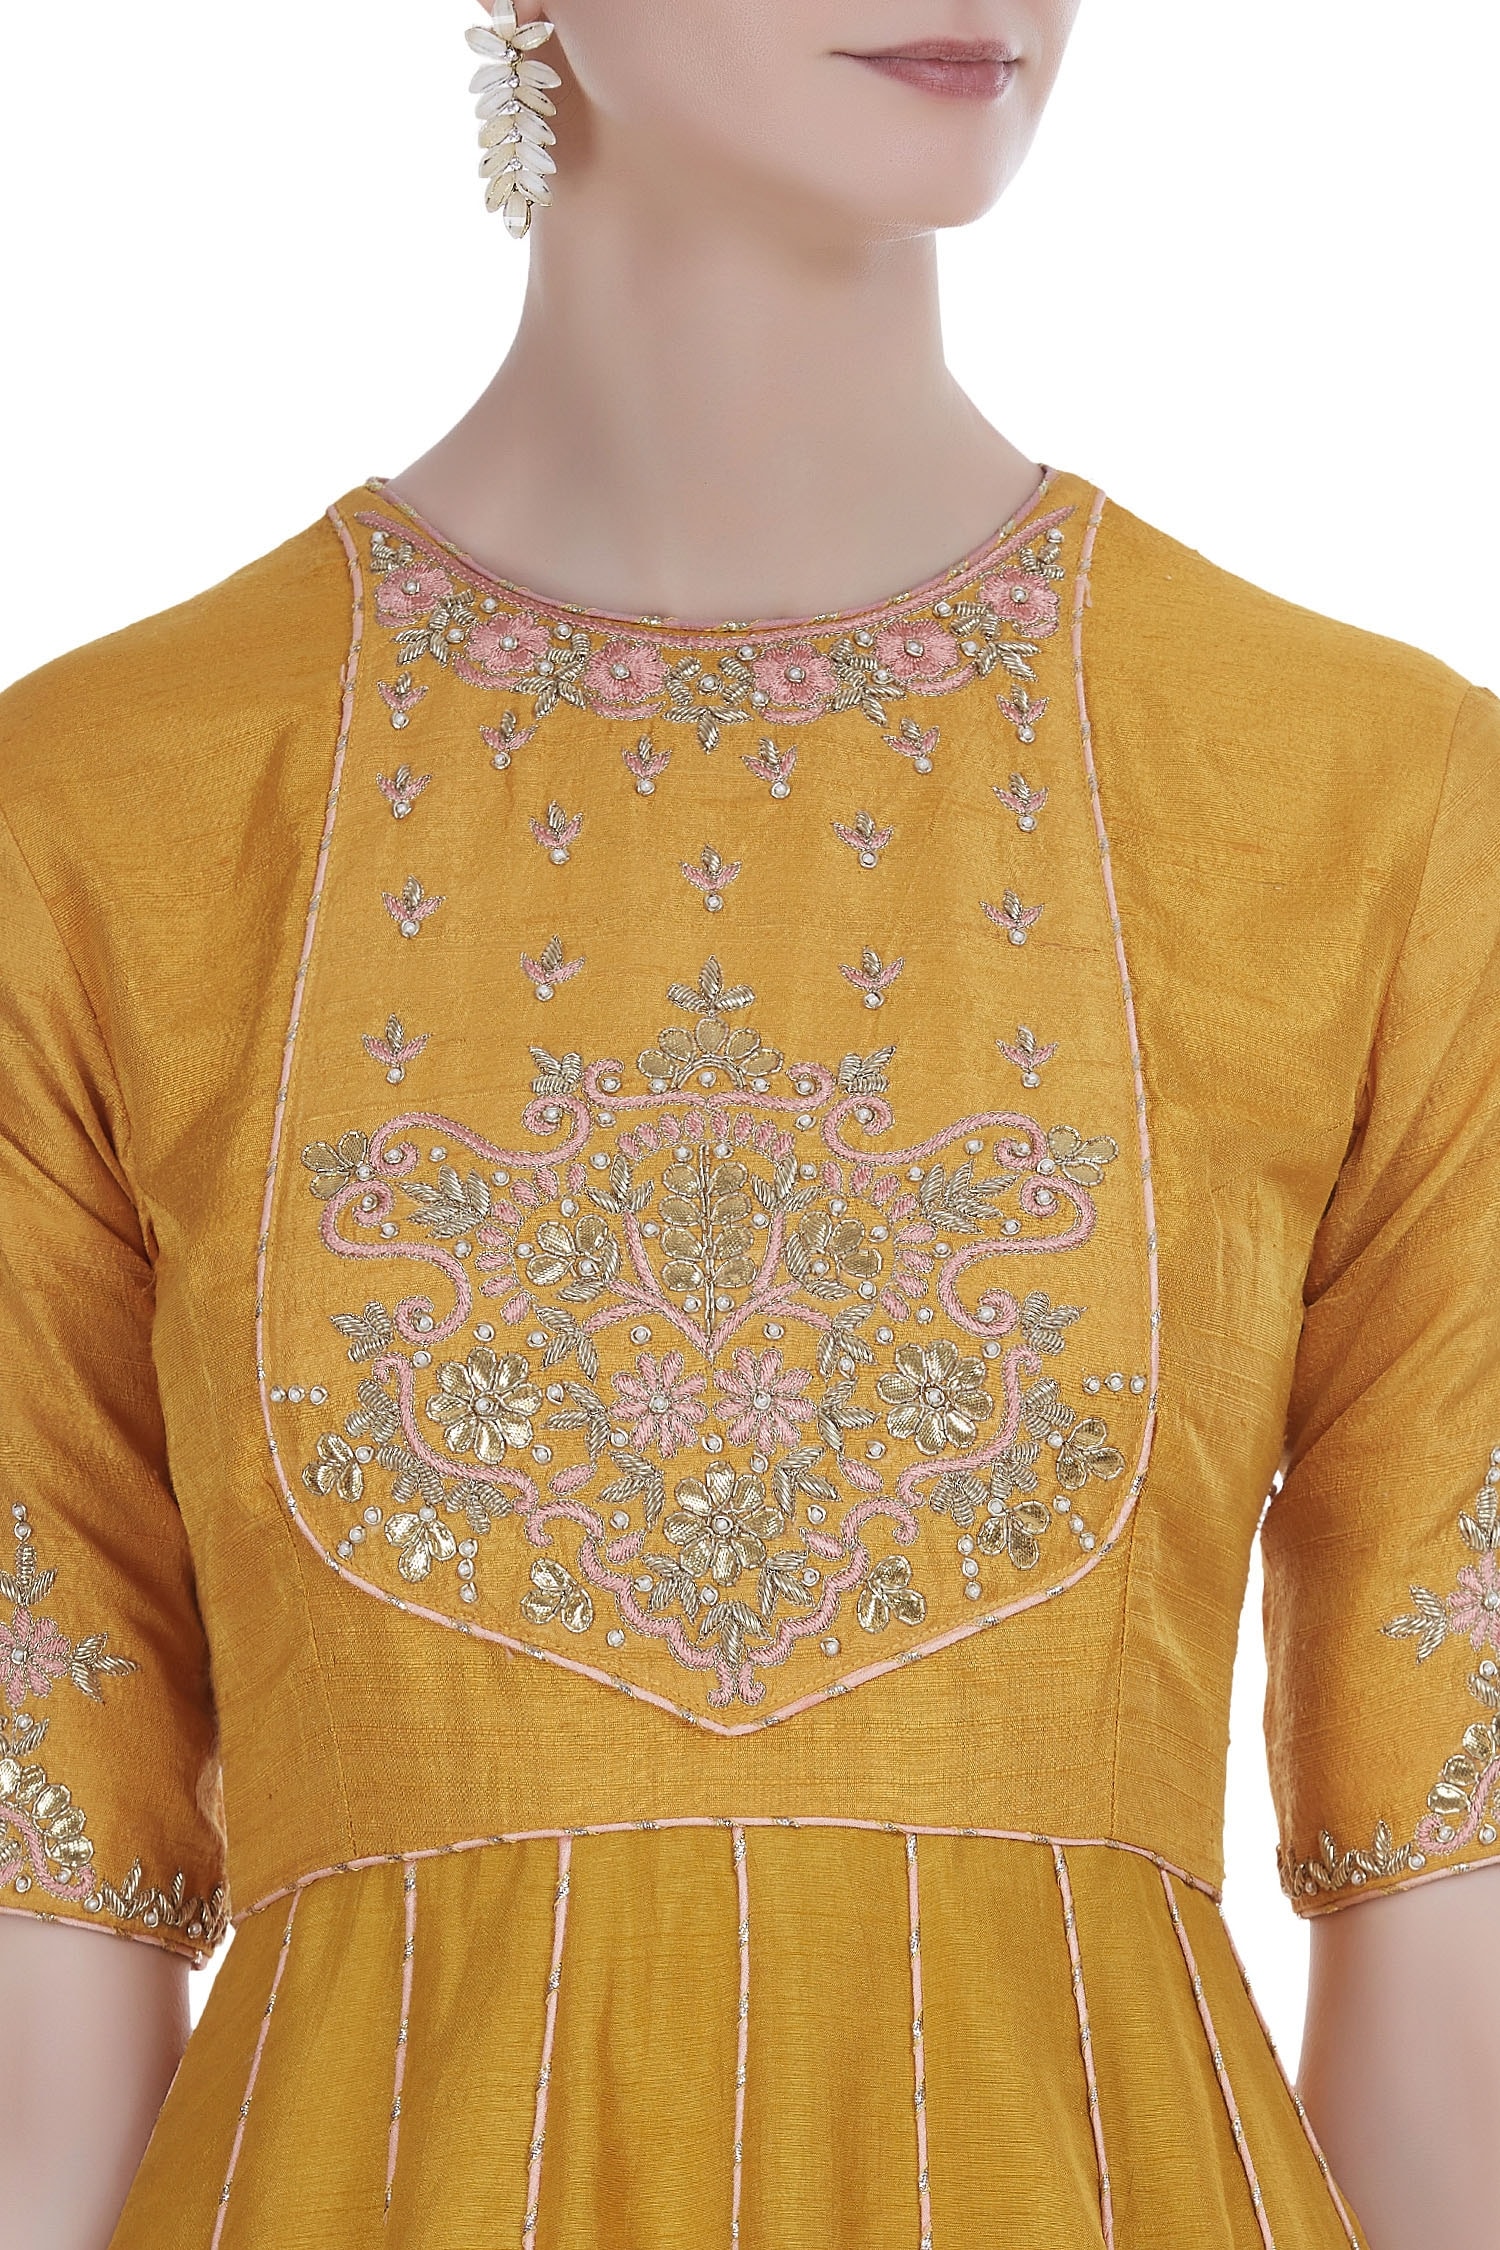 Buy Banarasi Silk Anarkali with Dupatta by Kritika Dawar at Aza Fashions